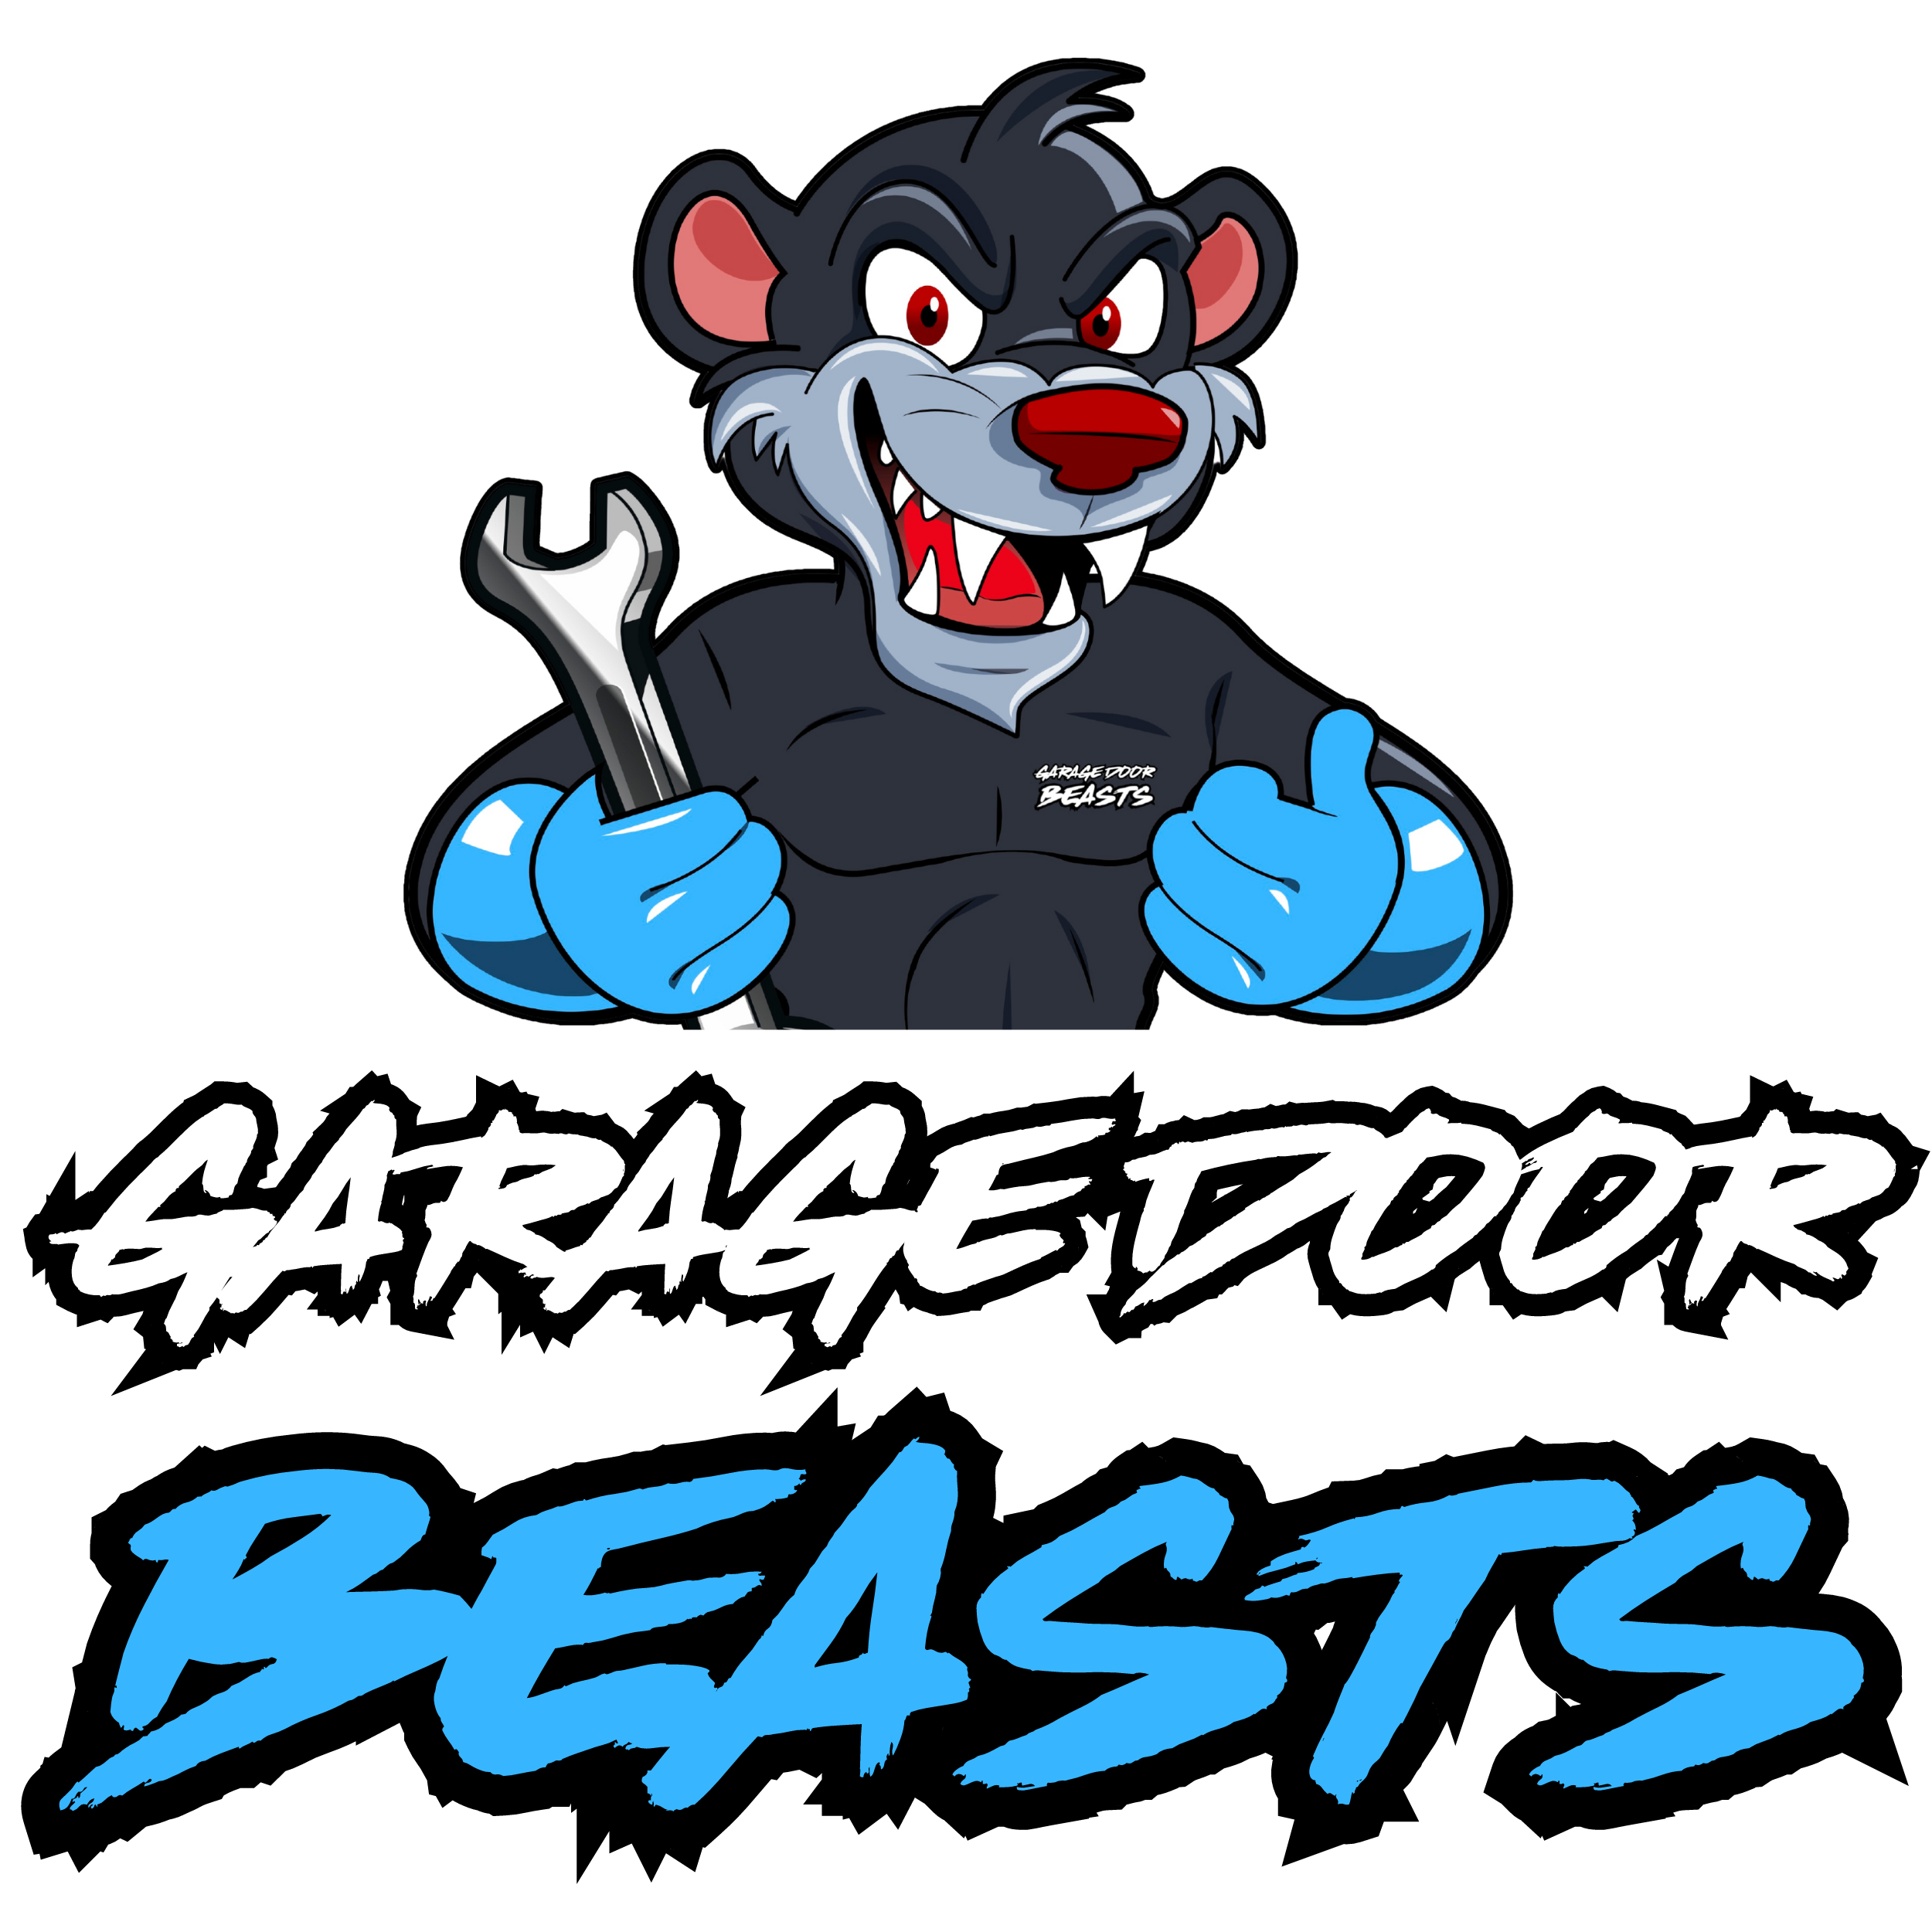 Garage Door Beasts's logo